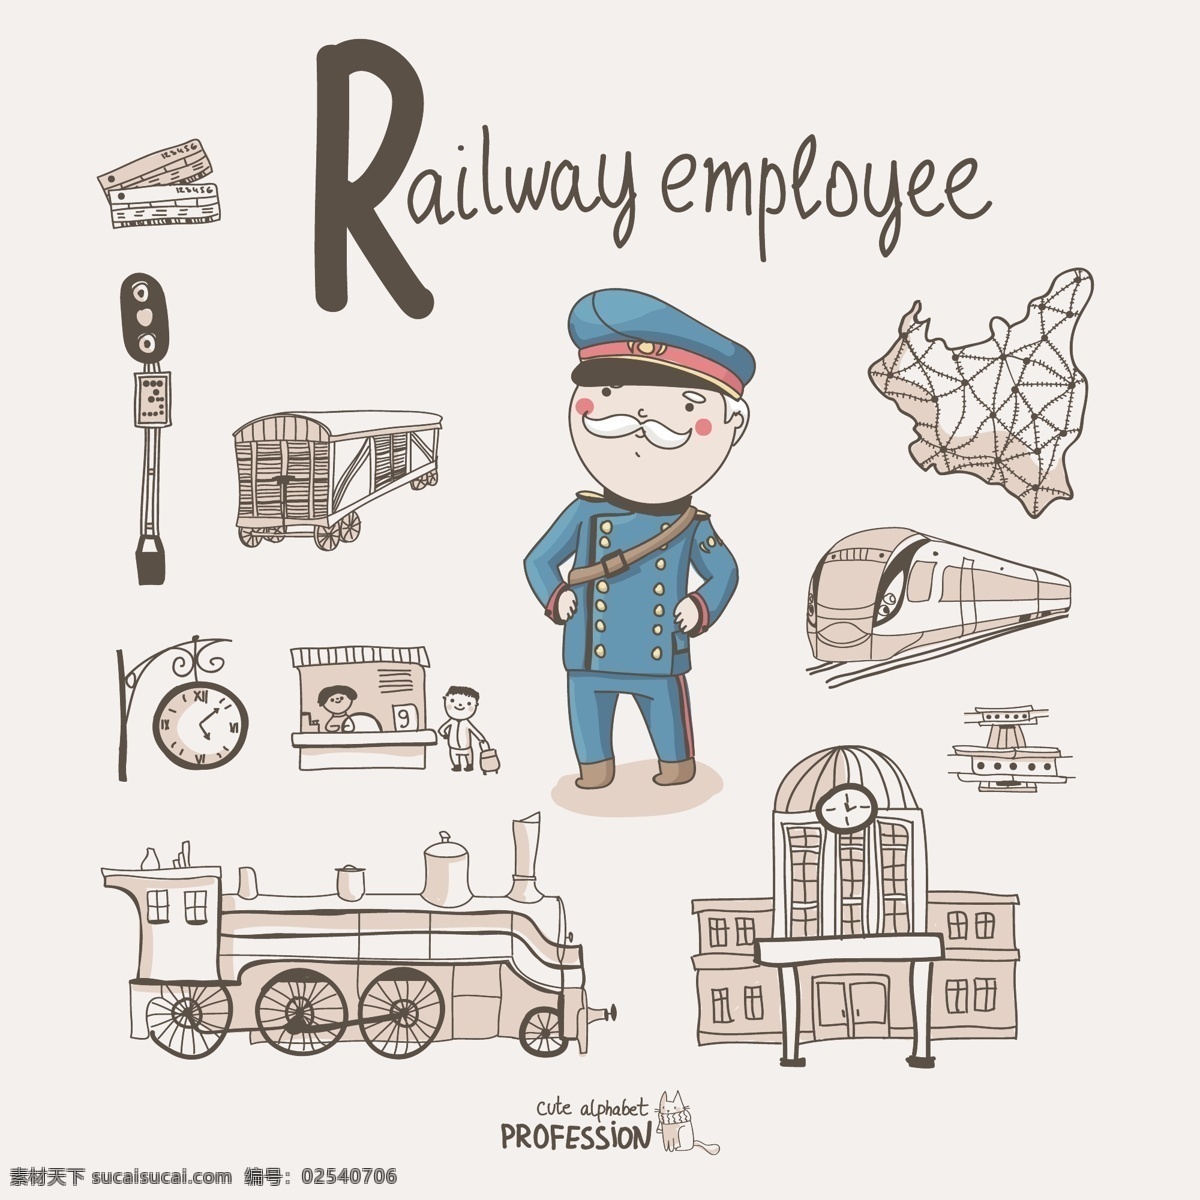 卡通动画设计 列车长 火车 铁路 卡通 动漫 动画 漫画 宣传设计 时尚背景 绚丽背景 背景素材 背景图案 矢量背景 背景设计 抽象背景 抽象设计 卡通背景 矢量设计 卡通设计 艺术设计 矢量